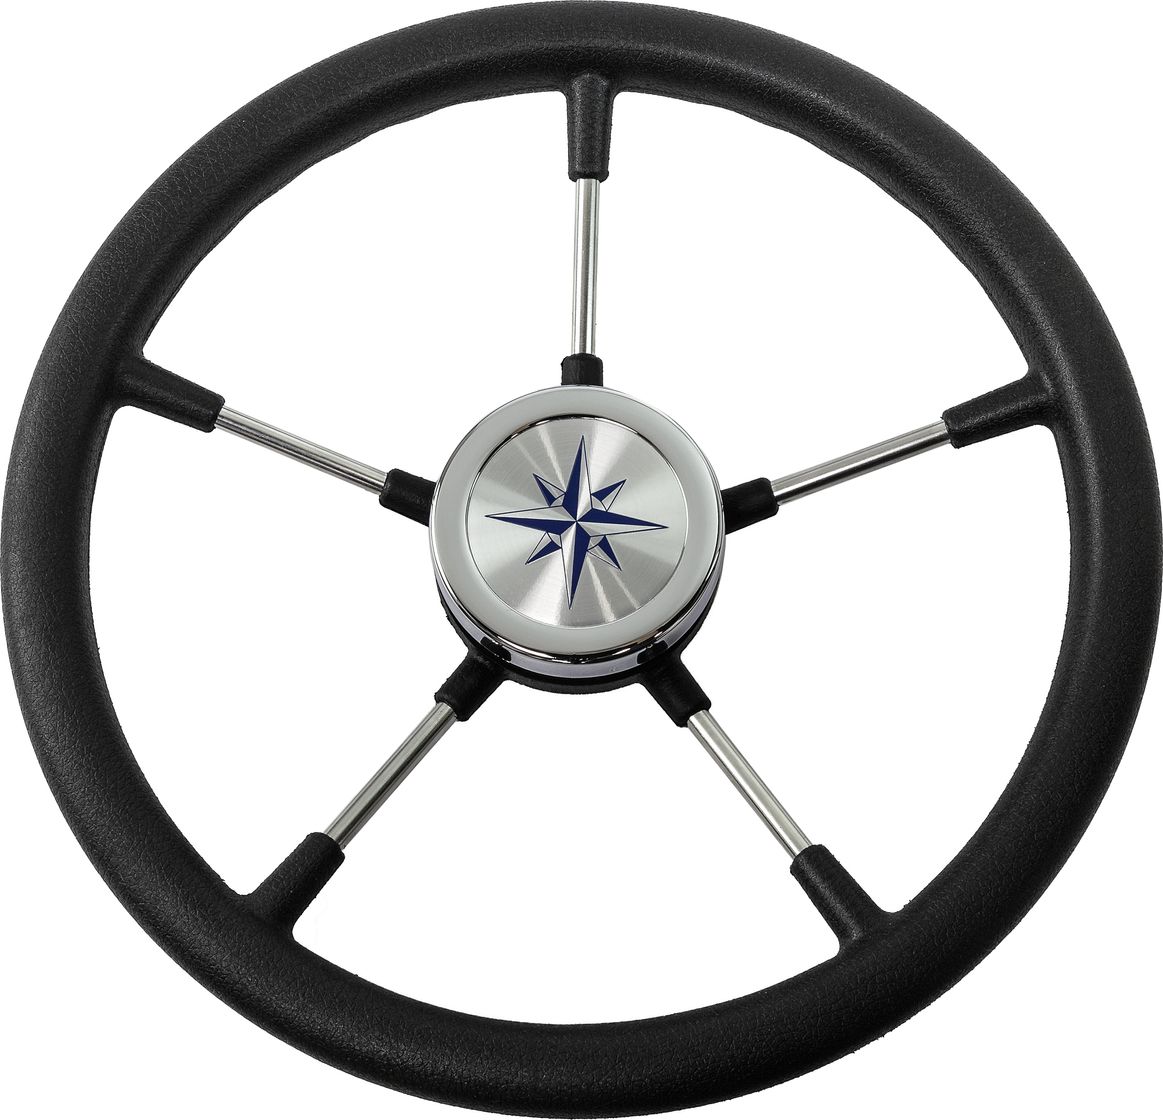 Рулевое колесо RIVA RSL обод черный, спицы серебряные д. 360 мм VN735022-01 рулевое колесо riva rsl обод спицы серебряные д 320 мм vn732022 01